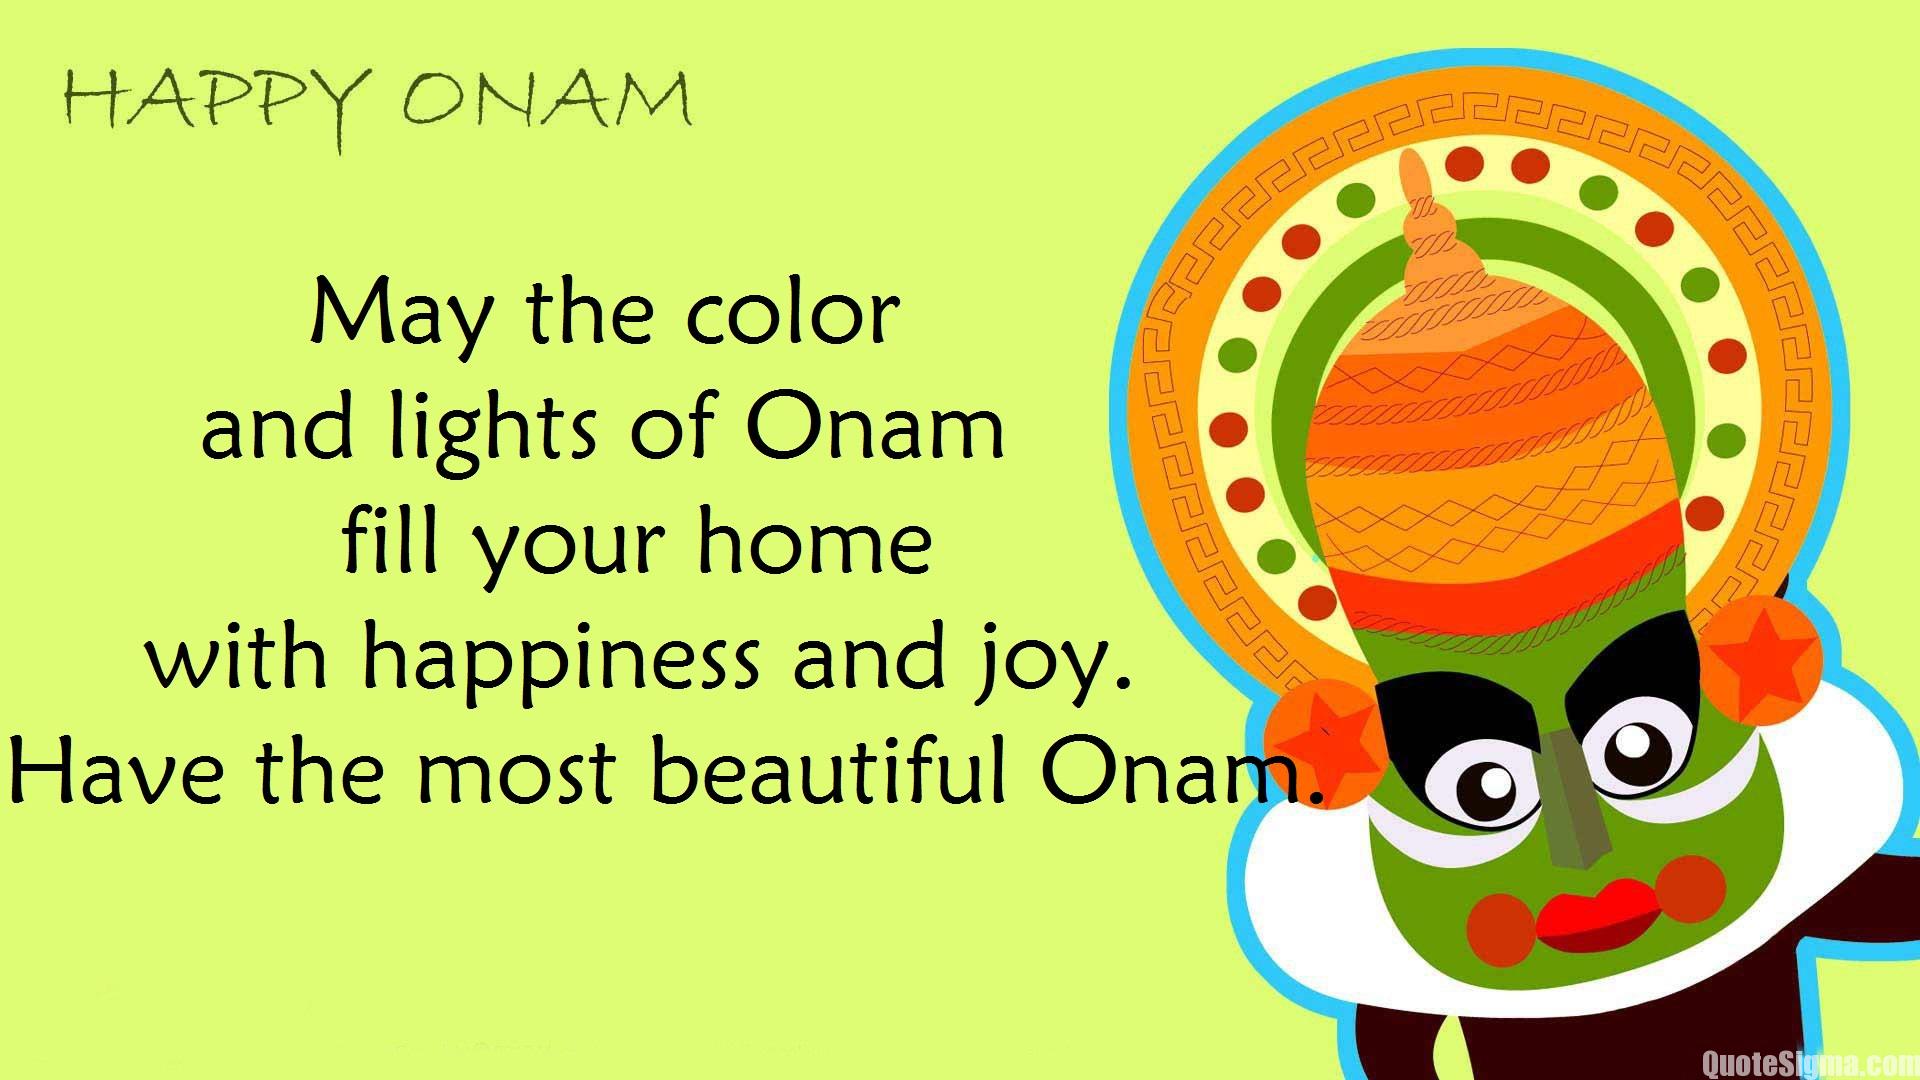 Happy Onam 2019 Wishes